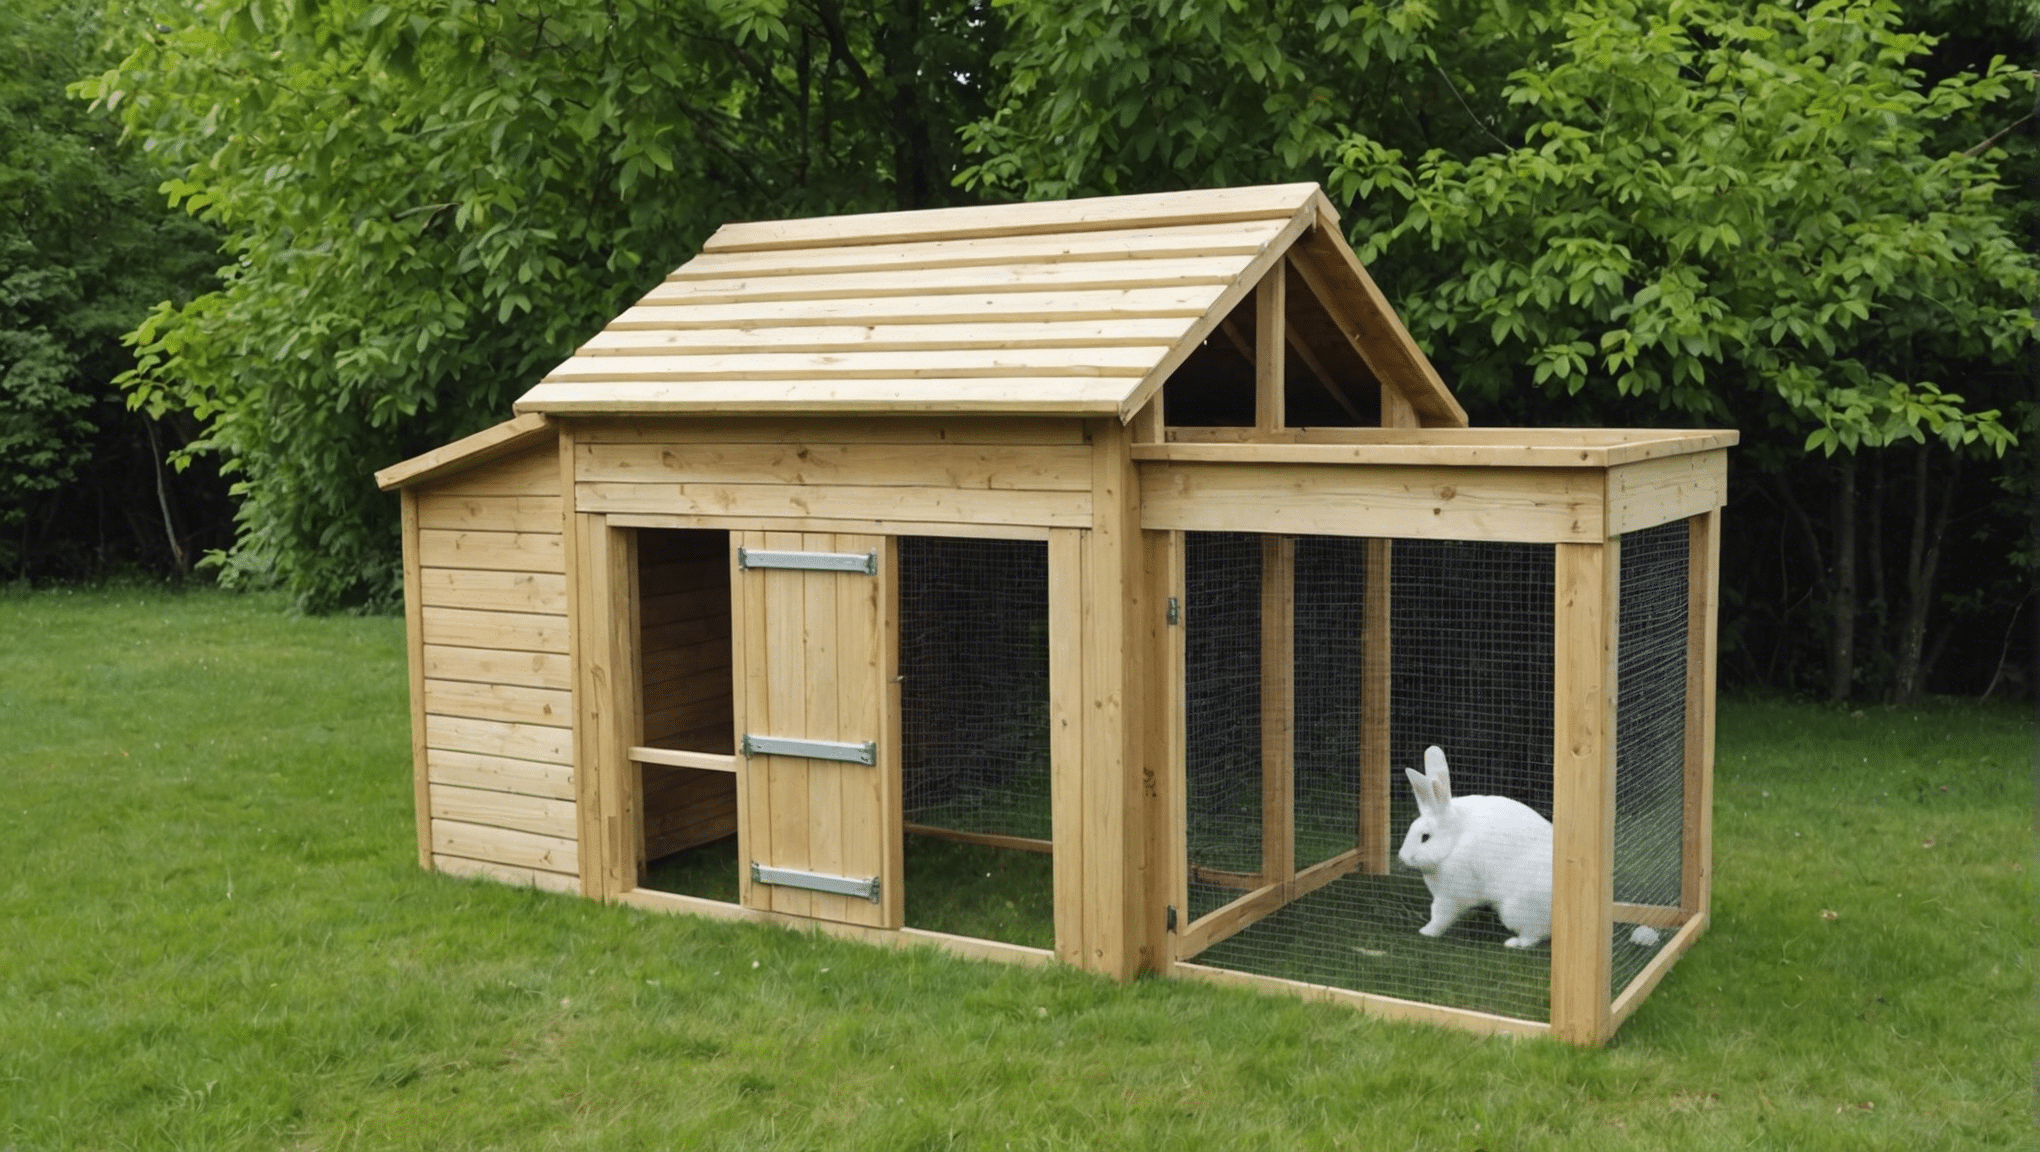 découvrez comment construire facilement un abri pour lapin avec nos conseils et astuces pratiques. apprenez les étapes clés et les matériaux nécessaires pour offrir un habitat confortable à votre lapin.